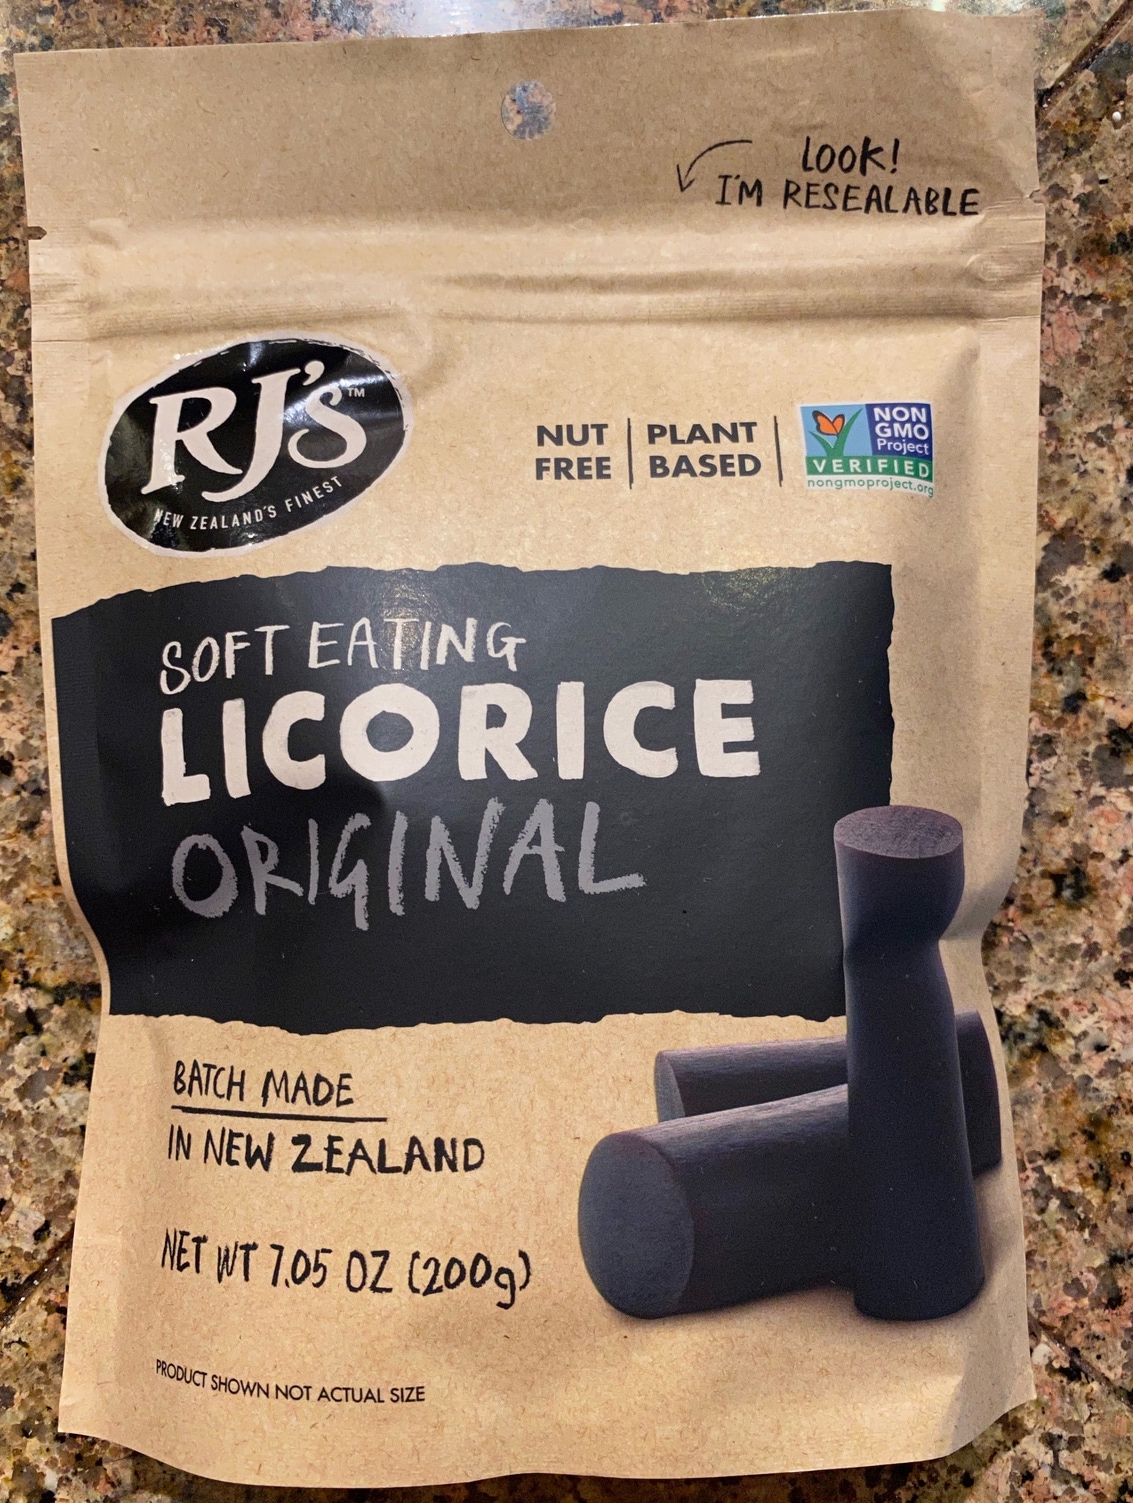 RJ's Original Soft Eating Licorice Bag